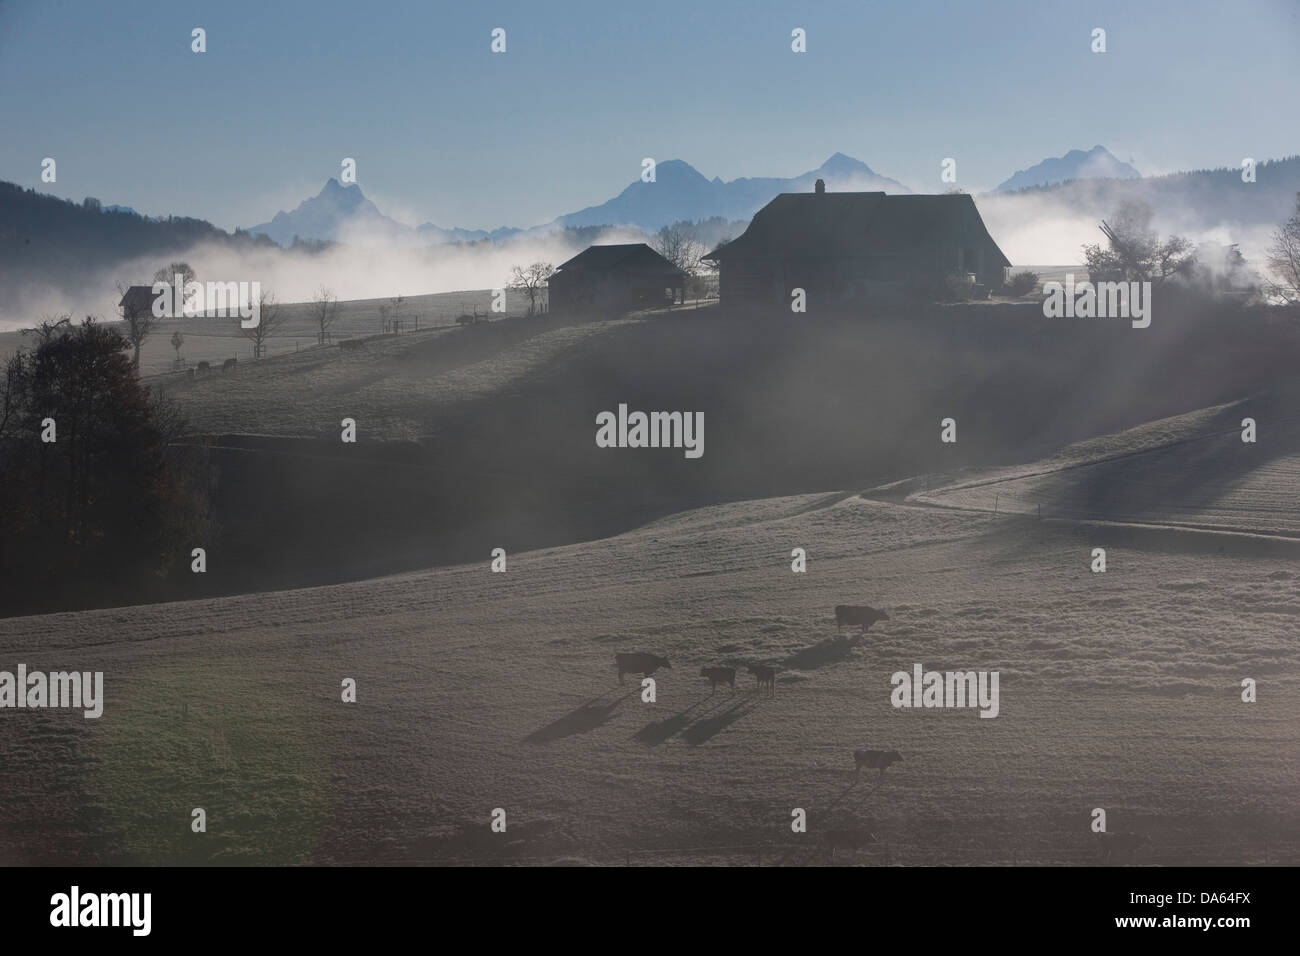 Mare di nebbia, nebbia, area Jungfrau, autunno, il cantone di Berna Oberland Bernese, nebbia, mucca, vacche, agricoltura, albero, alberi, Svizzera, e Foto Stock